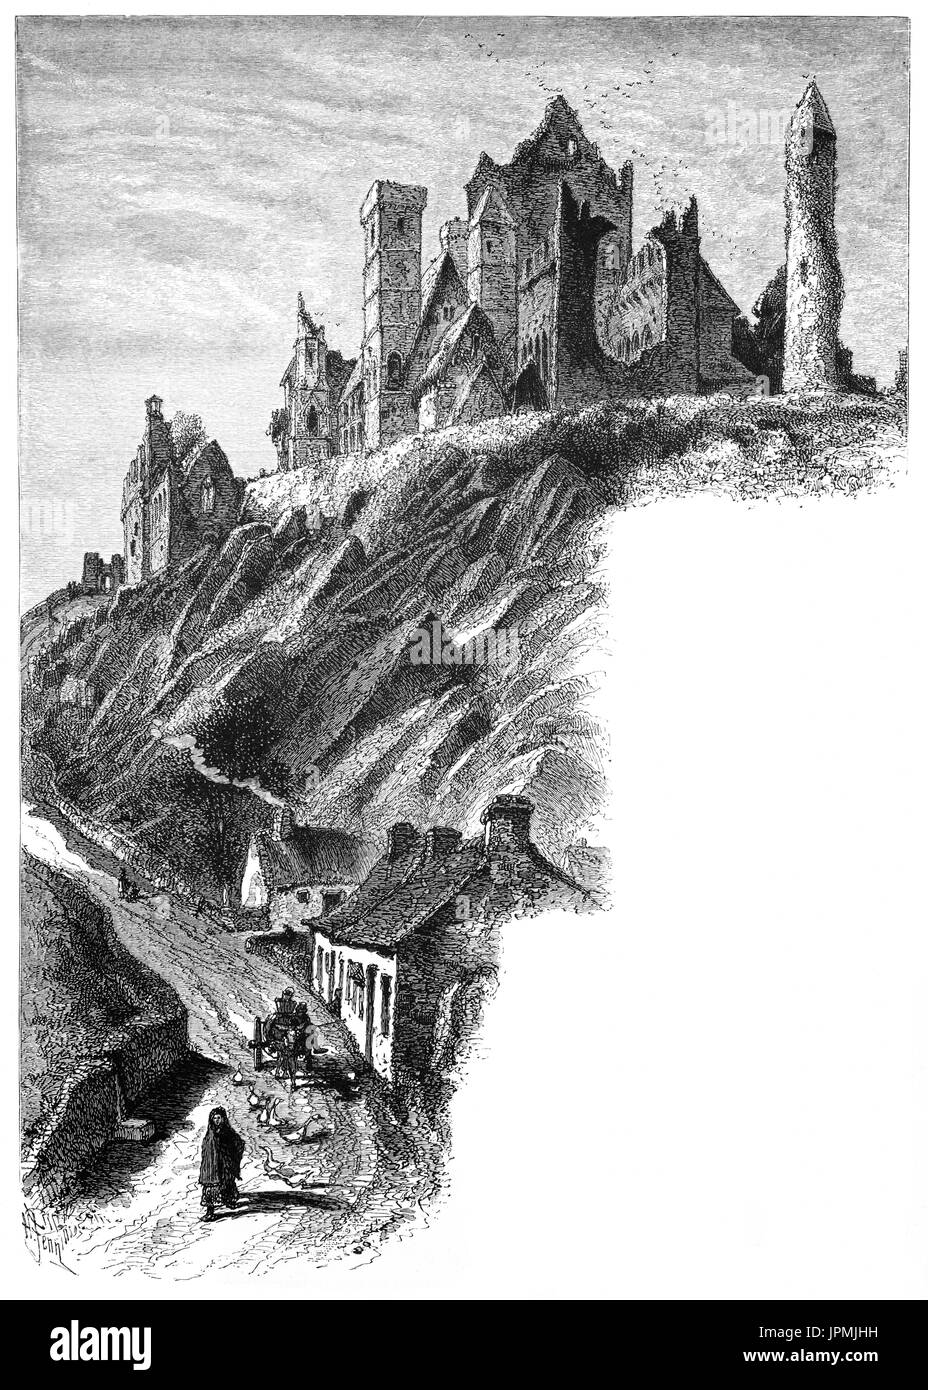 1870 : Le Rock of Cashel, également connu sous le nom de Cashel des Rois et Saint Patrick's Rock. C'était le traditionnel siège des rois de Munster pendant plusieurs centaines d'années avant l'invasion normande. En 1101, le roi de Munster, Muirchertach Ua Briain, a fait don de sa forteresse sur le rocher de l'Église. Le complexe est l'une des plus remarquables collections d'architecture médiévale que l'on puisse trouver en Europe. La plupart des bâtiments datent du 12e et 13e siècles. Situé à Cashel, comté de Tipperary, Irlande. Banque D'Images